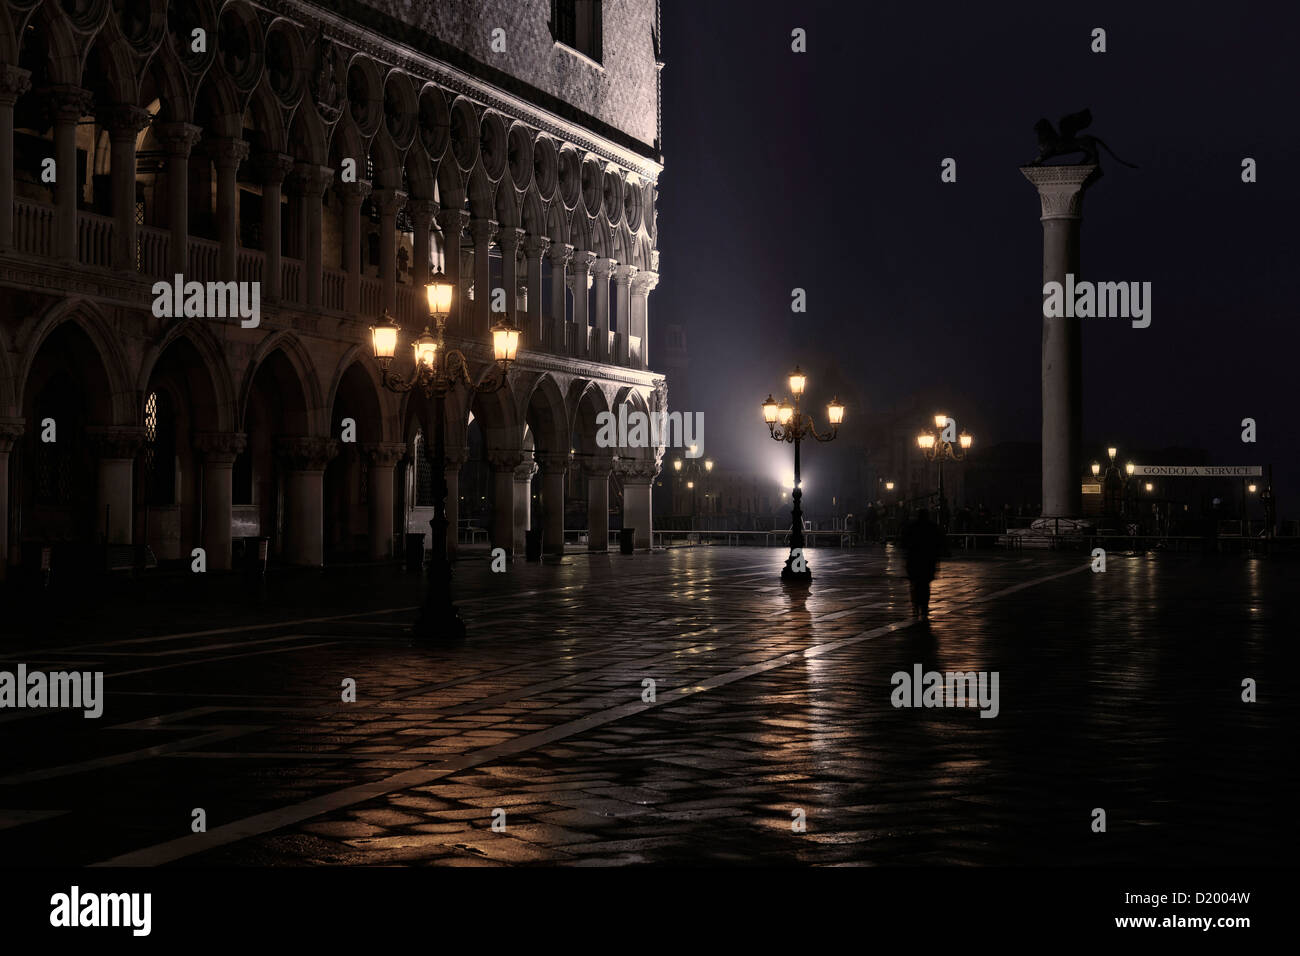 Piazzetta, San Giorgio Maggiore, flood water, Aqua Alta, Venice, Italy Stock Photo